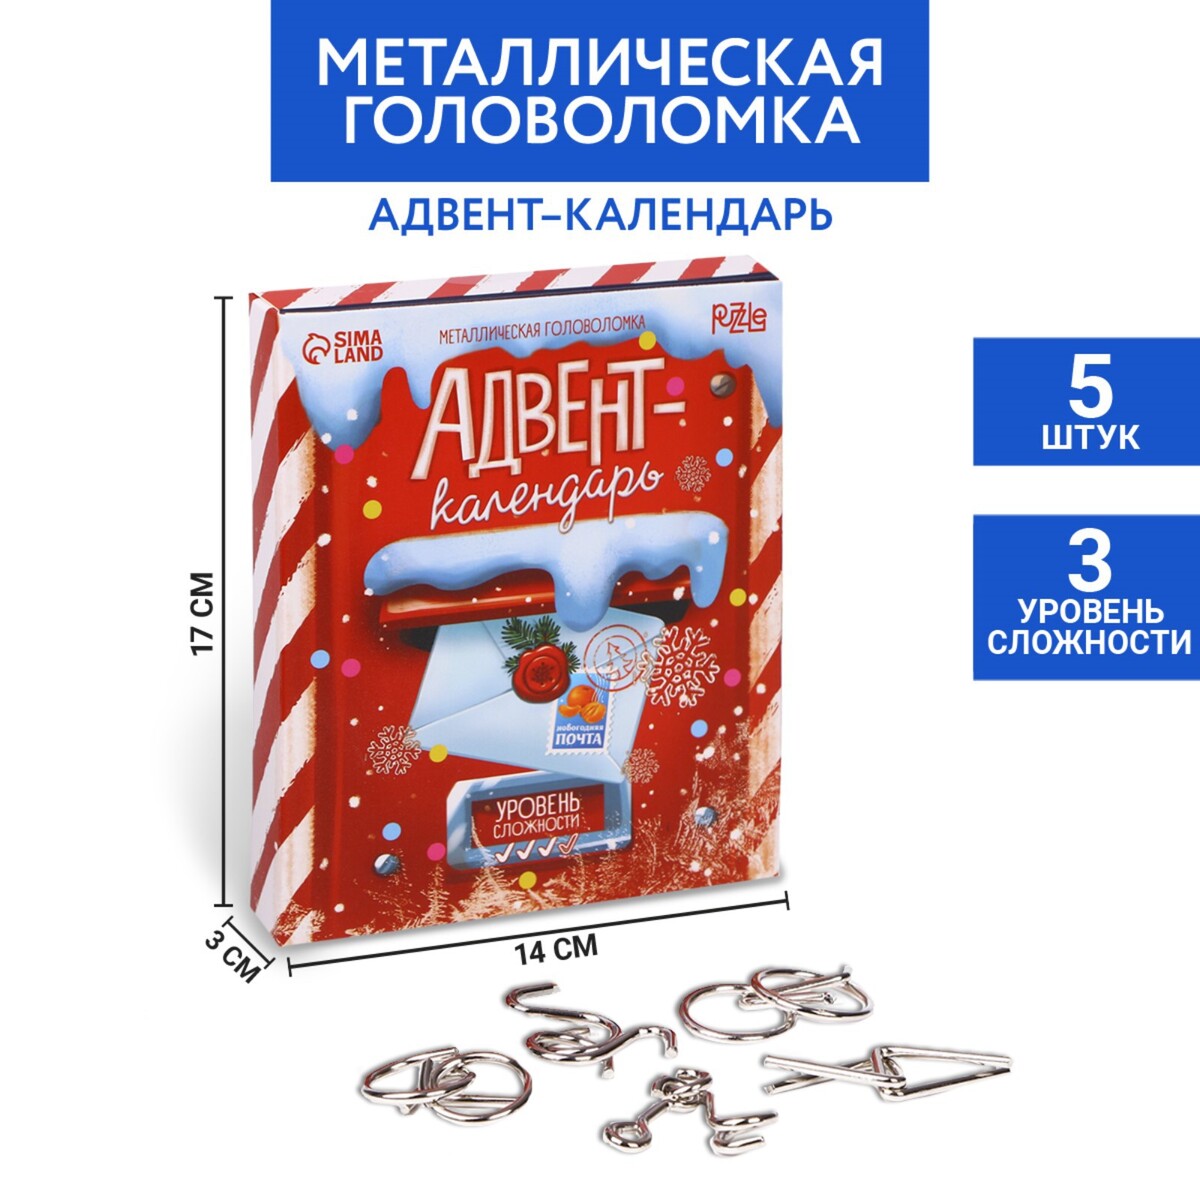 Новогодняя головоломка металлическая головоломка металлическая delfbrick петельки dlm 05